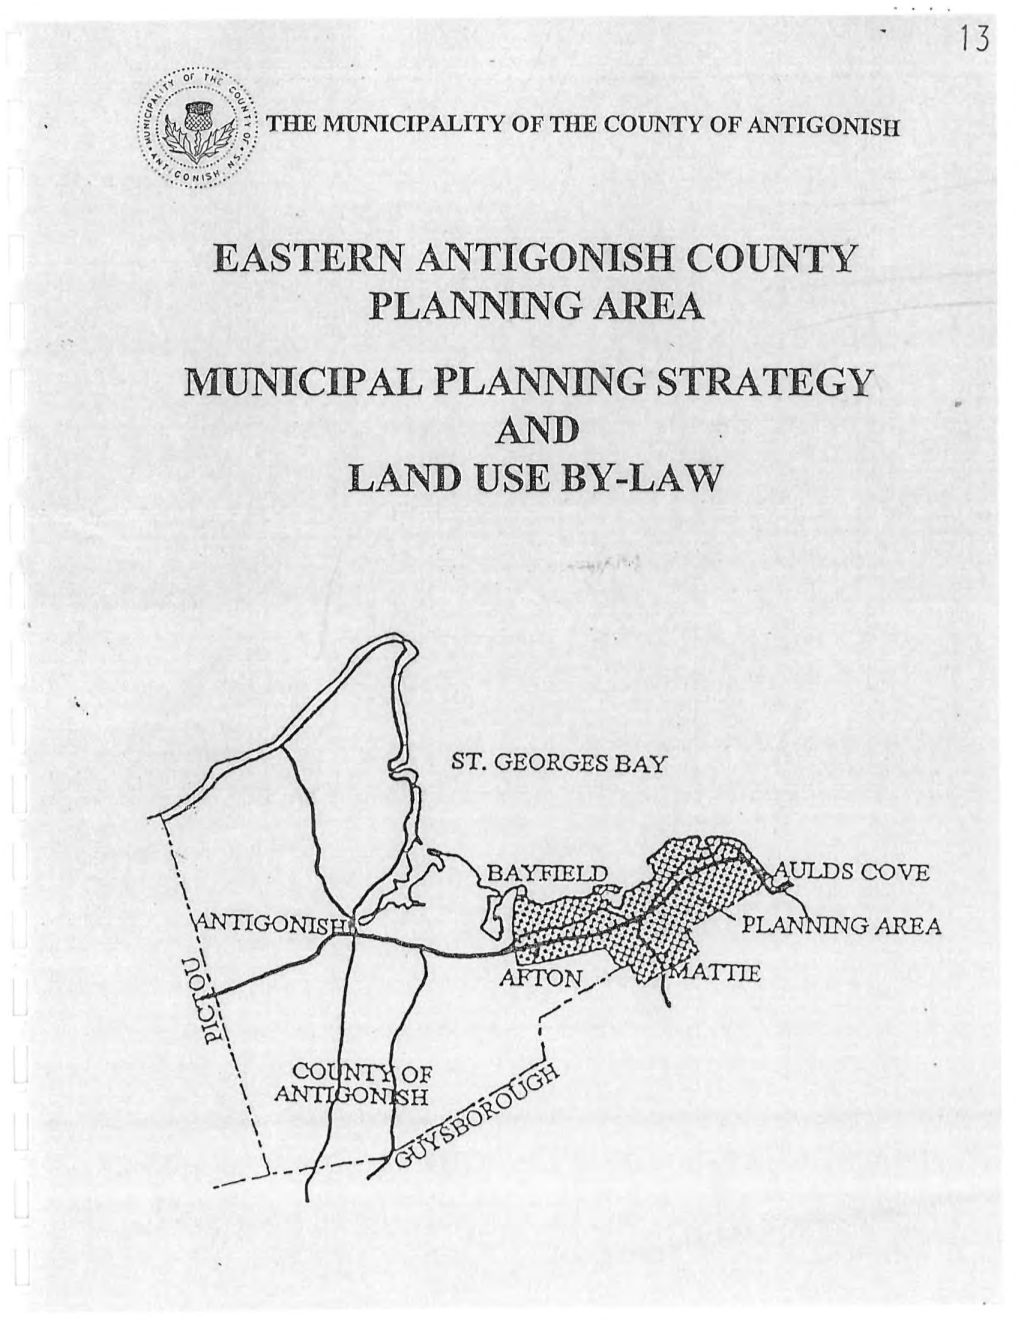 Municipal Planning Strategy